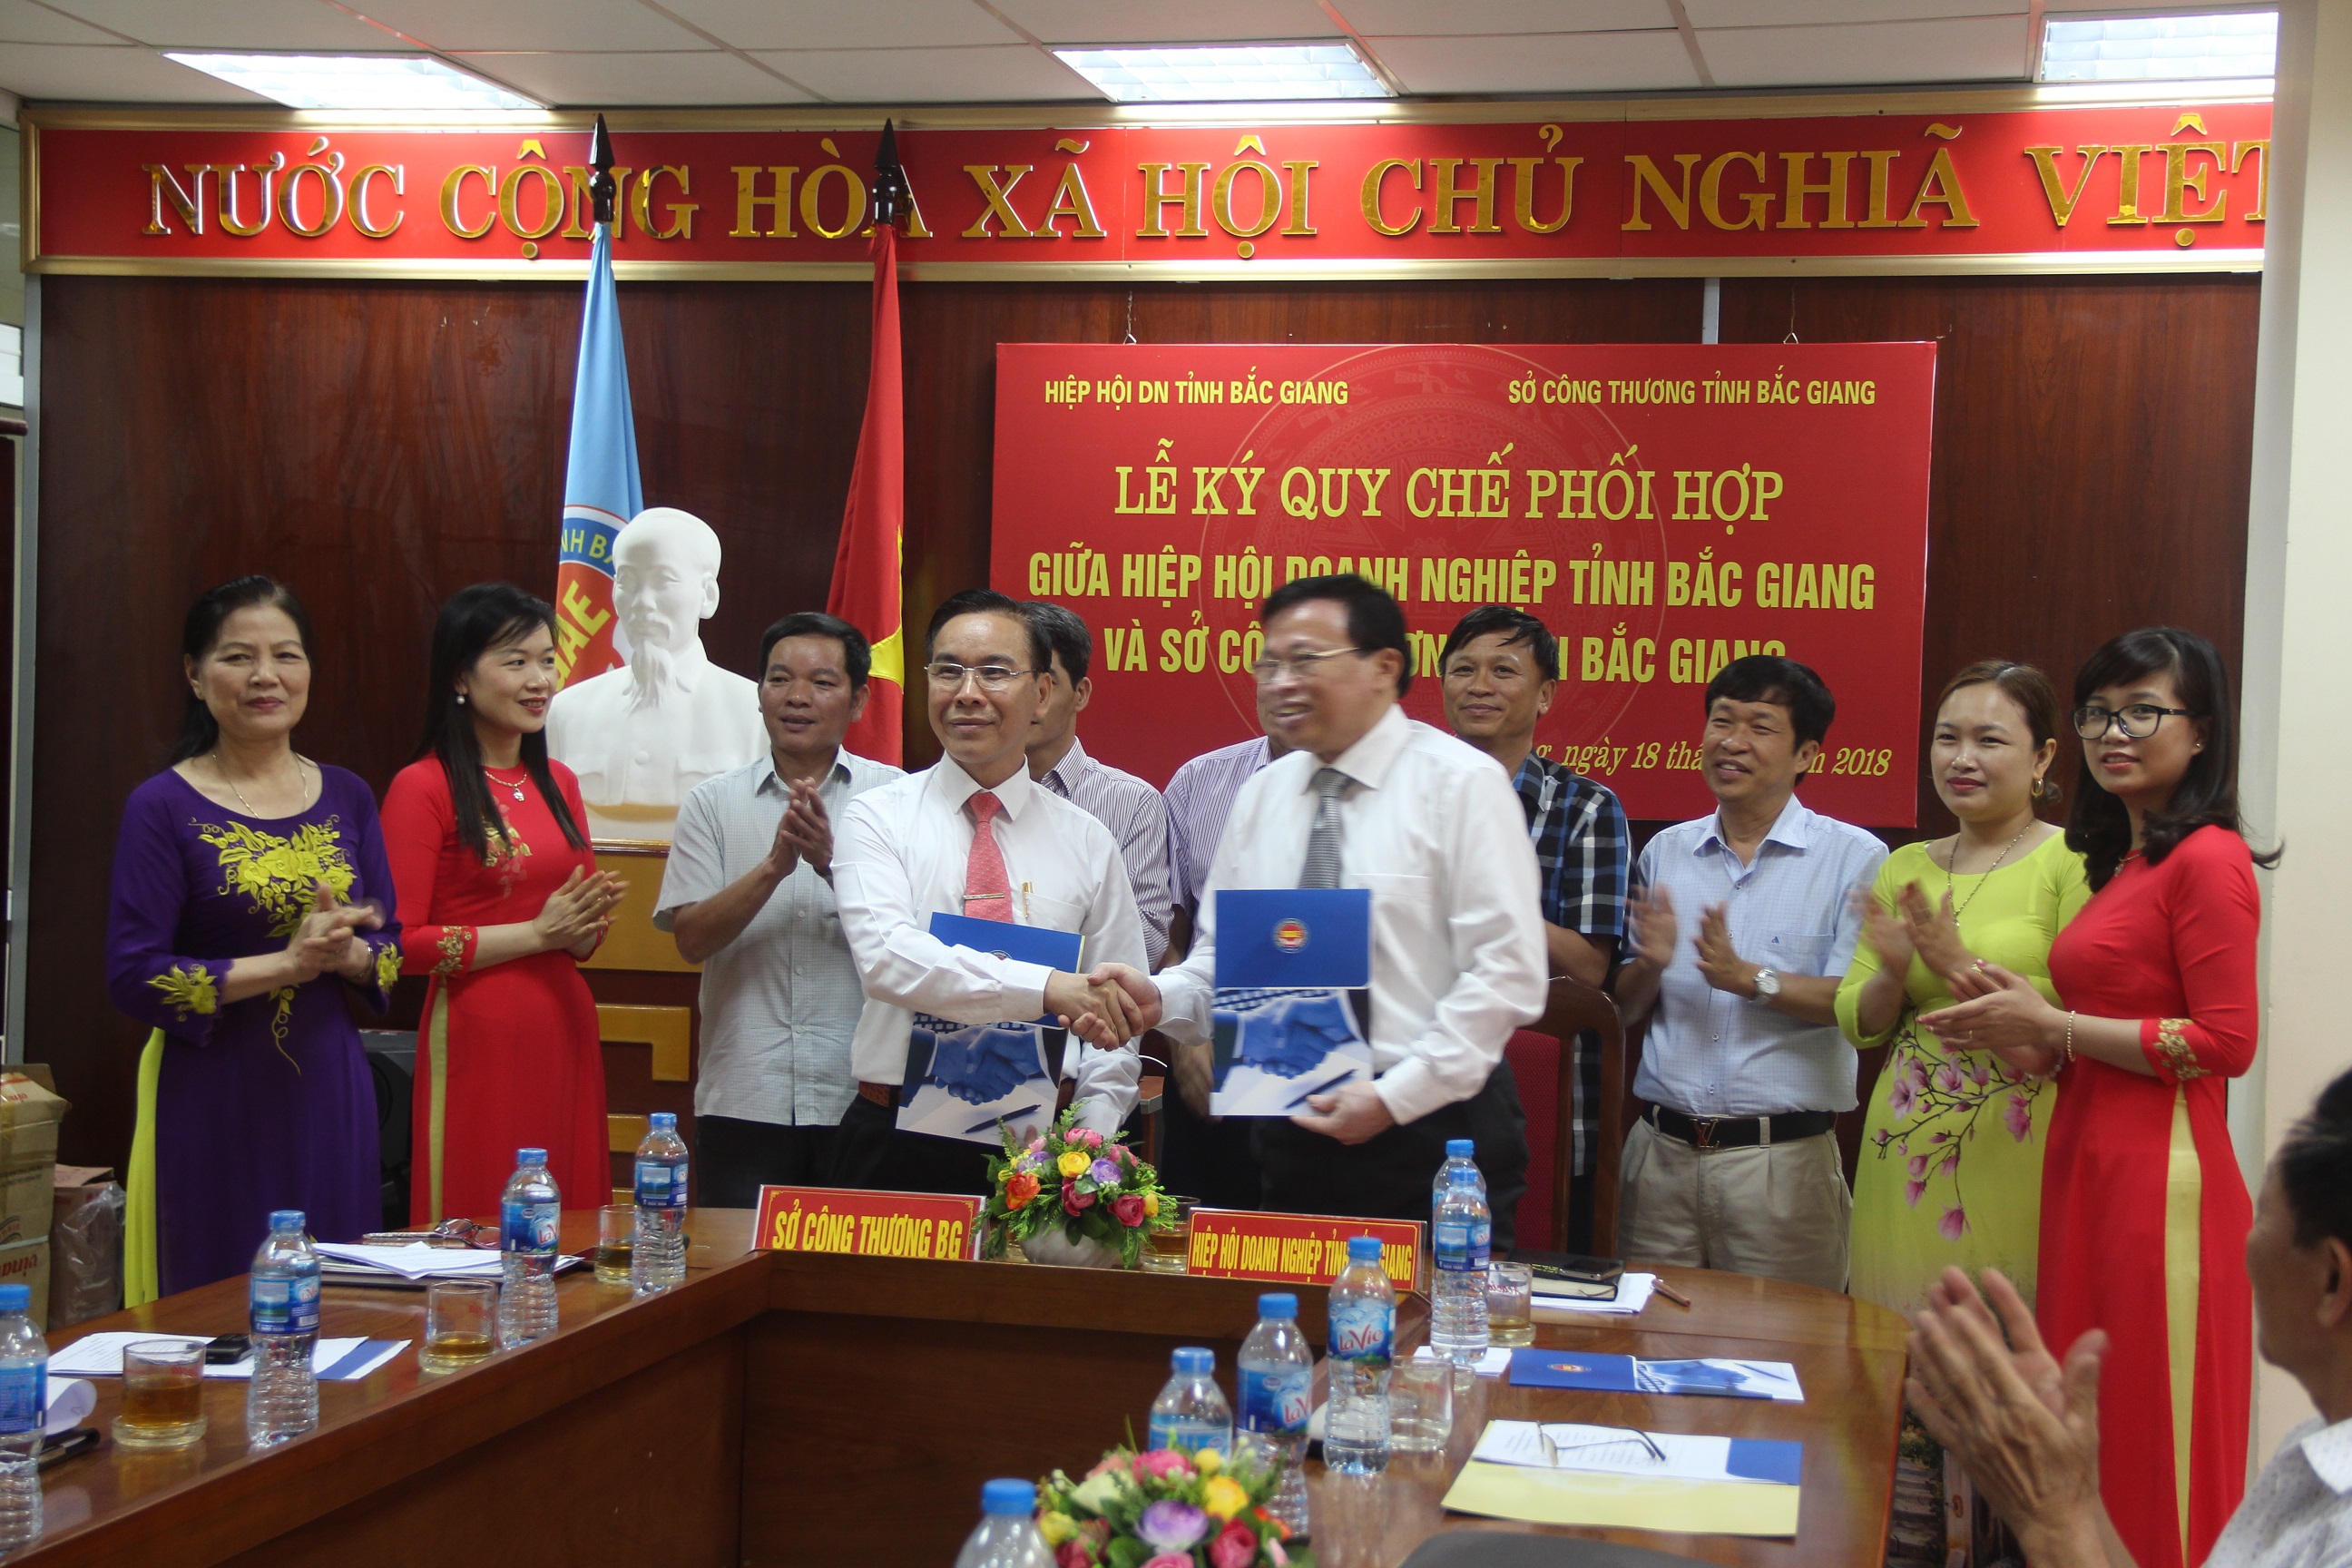 Quy chế phối hợp trong công tác quản lý nhà nước giữa Sở Công Thương Bắc Giang và Hiệp hội Doanh...